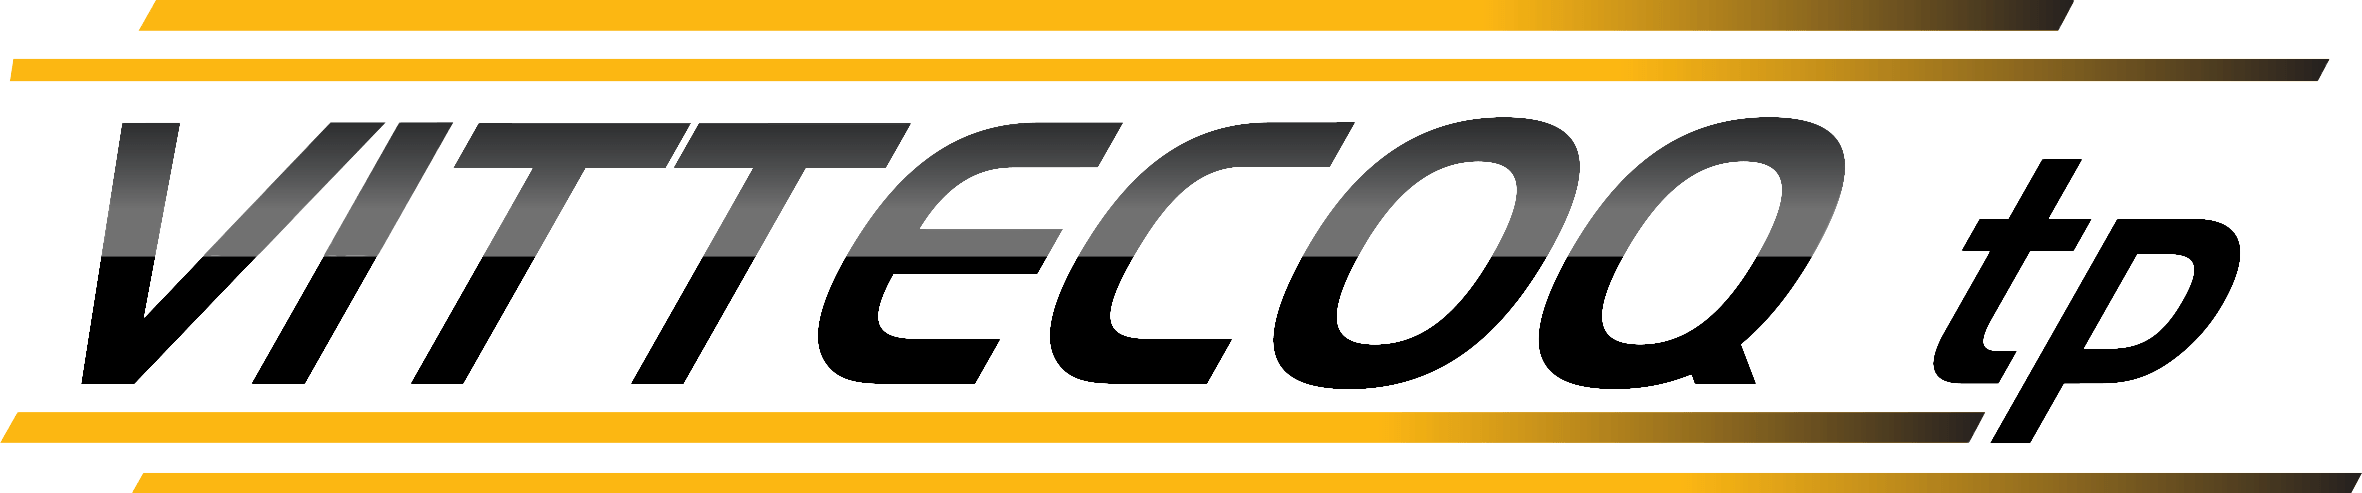 Logo Vittecoq TP